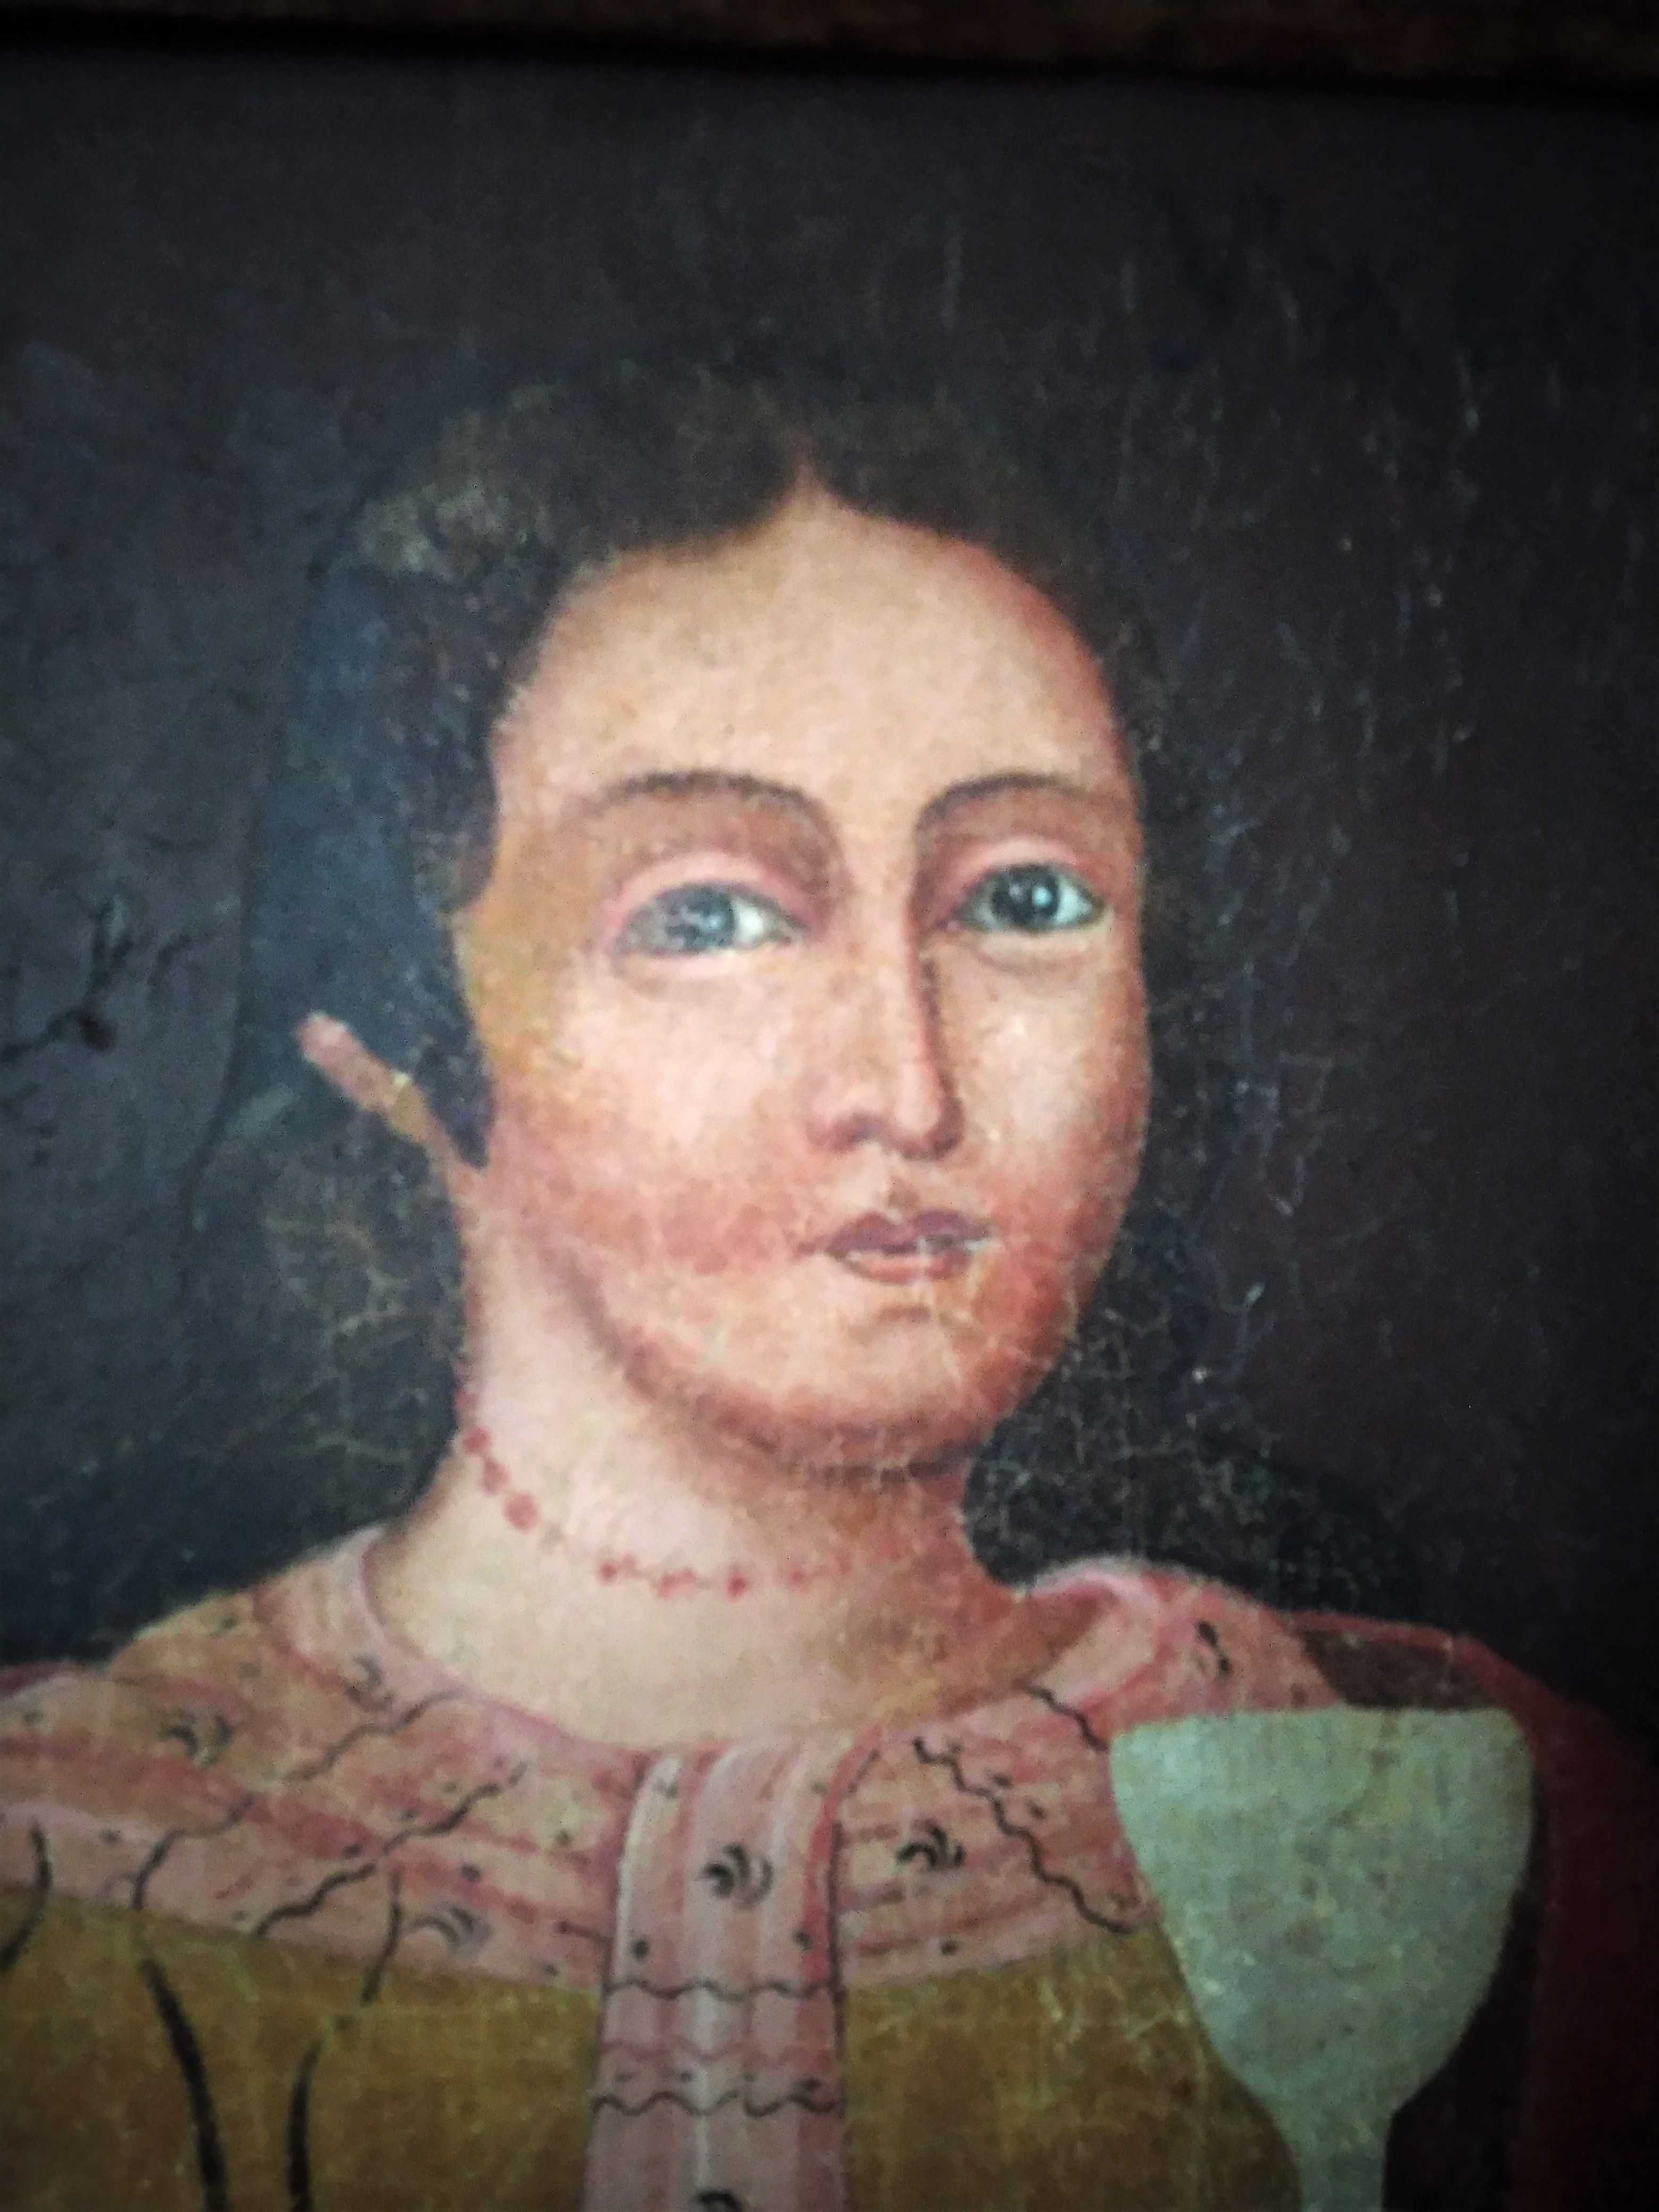 Картина-Парсуна 1788 г. - женский портрет в образе св. Параскевы